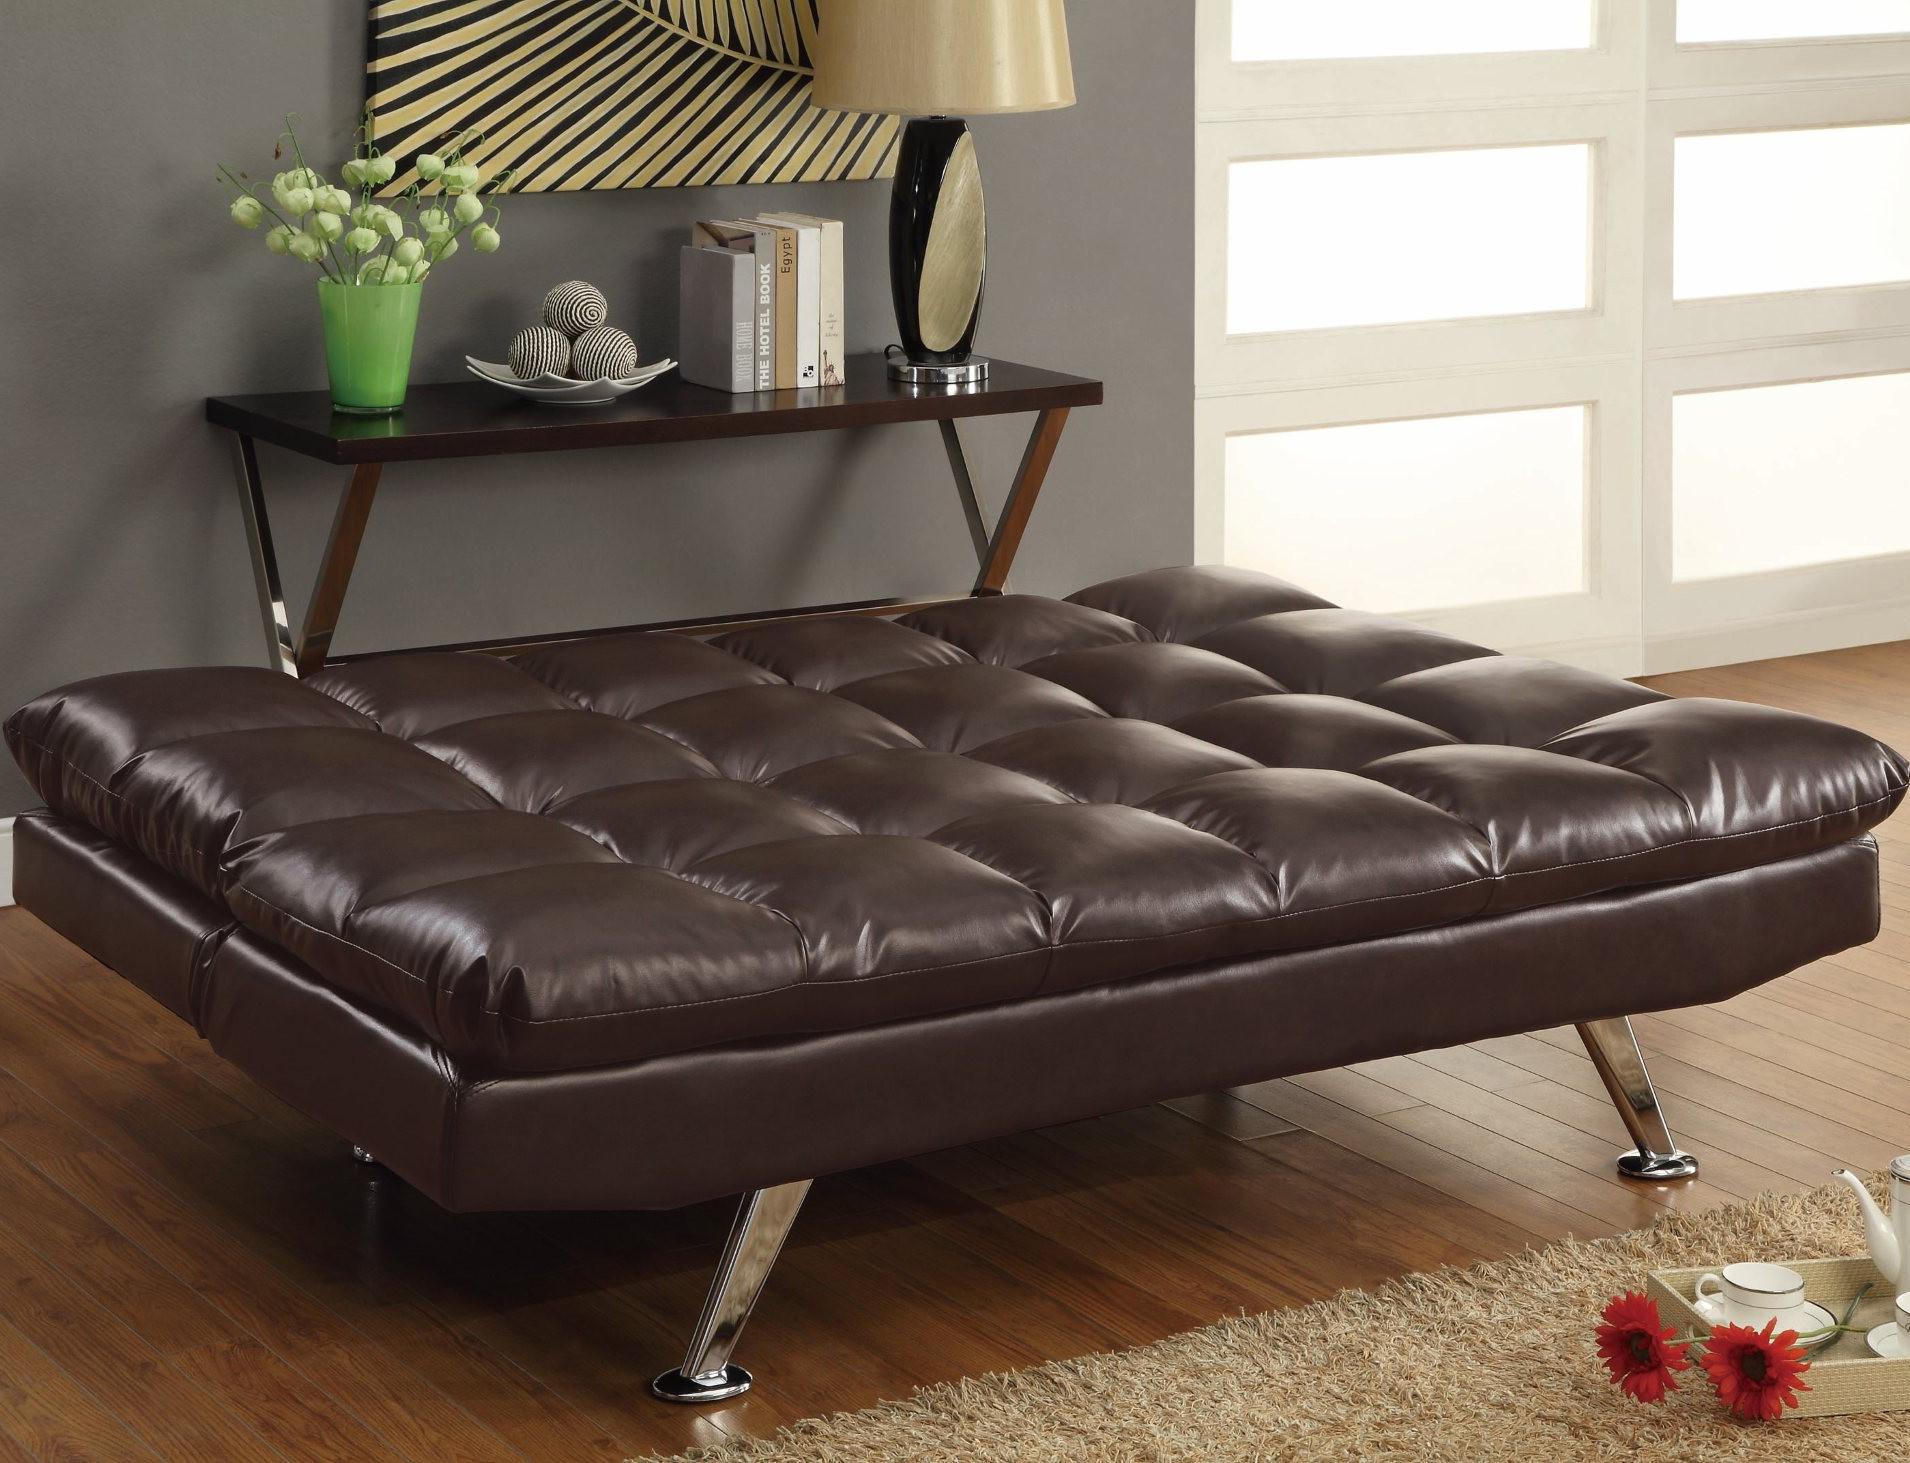 sofa bed for sale in sri lanka